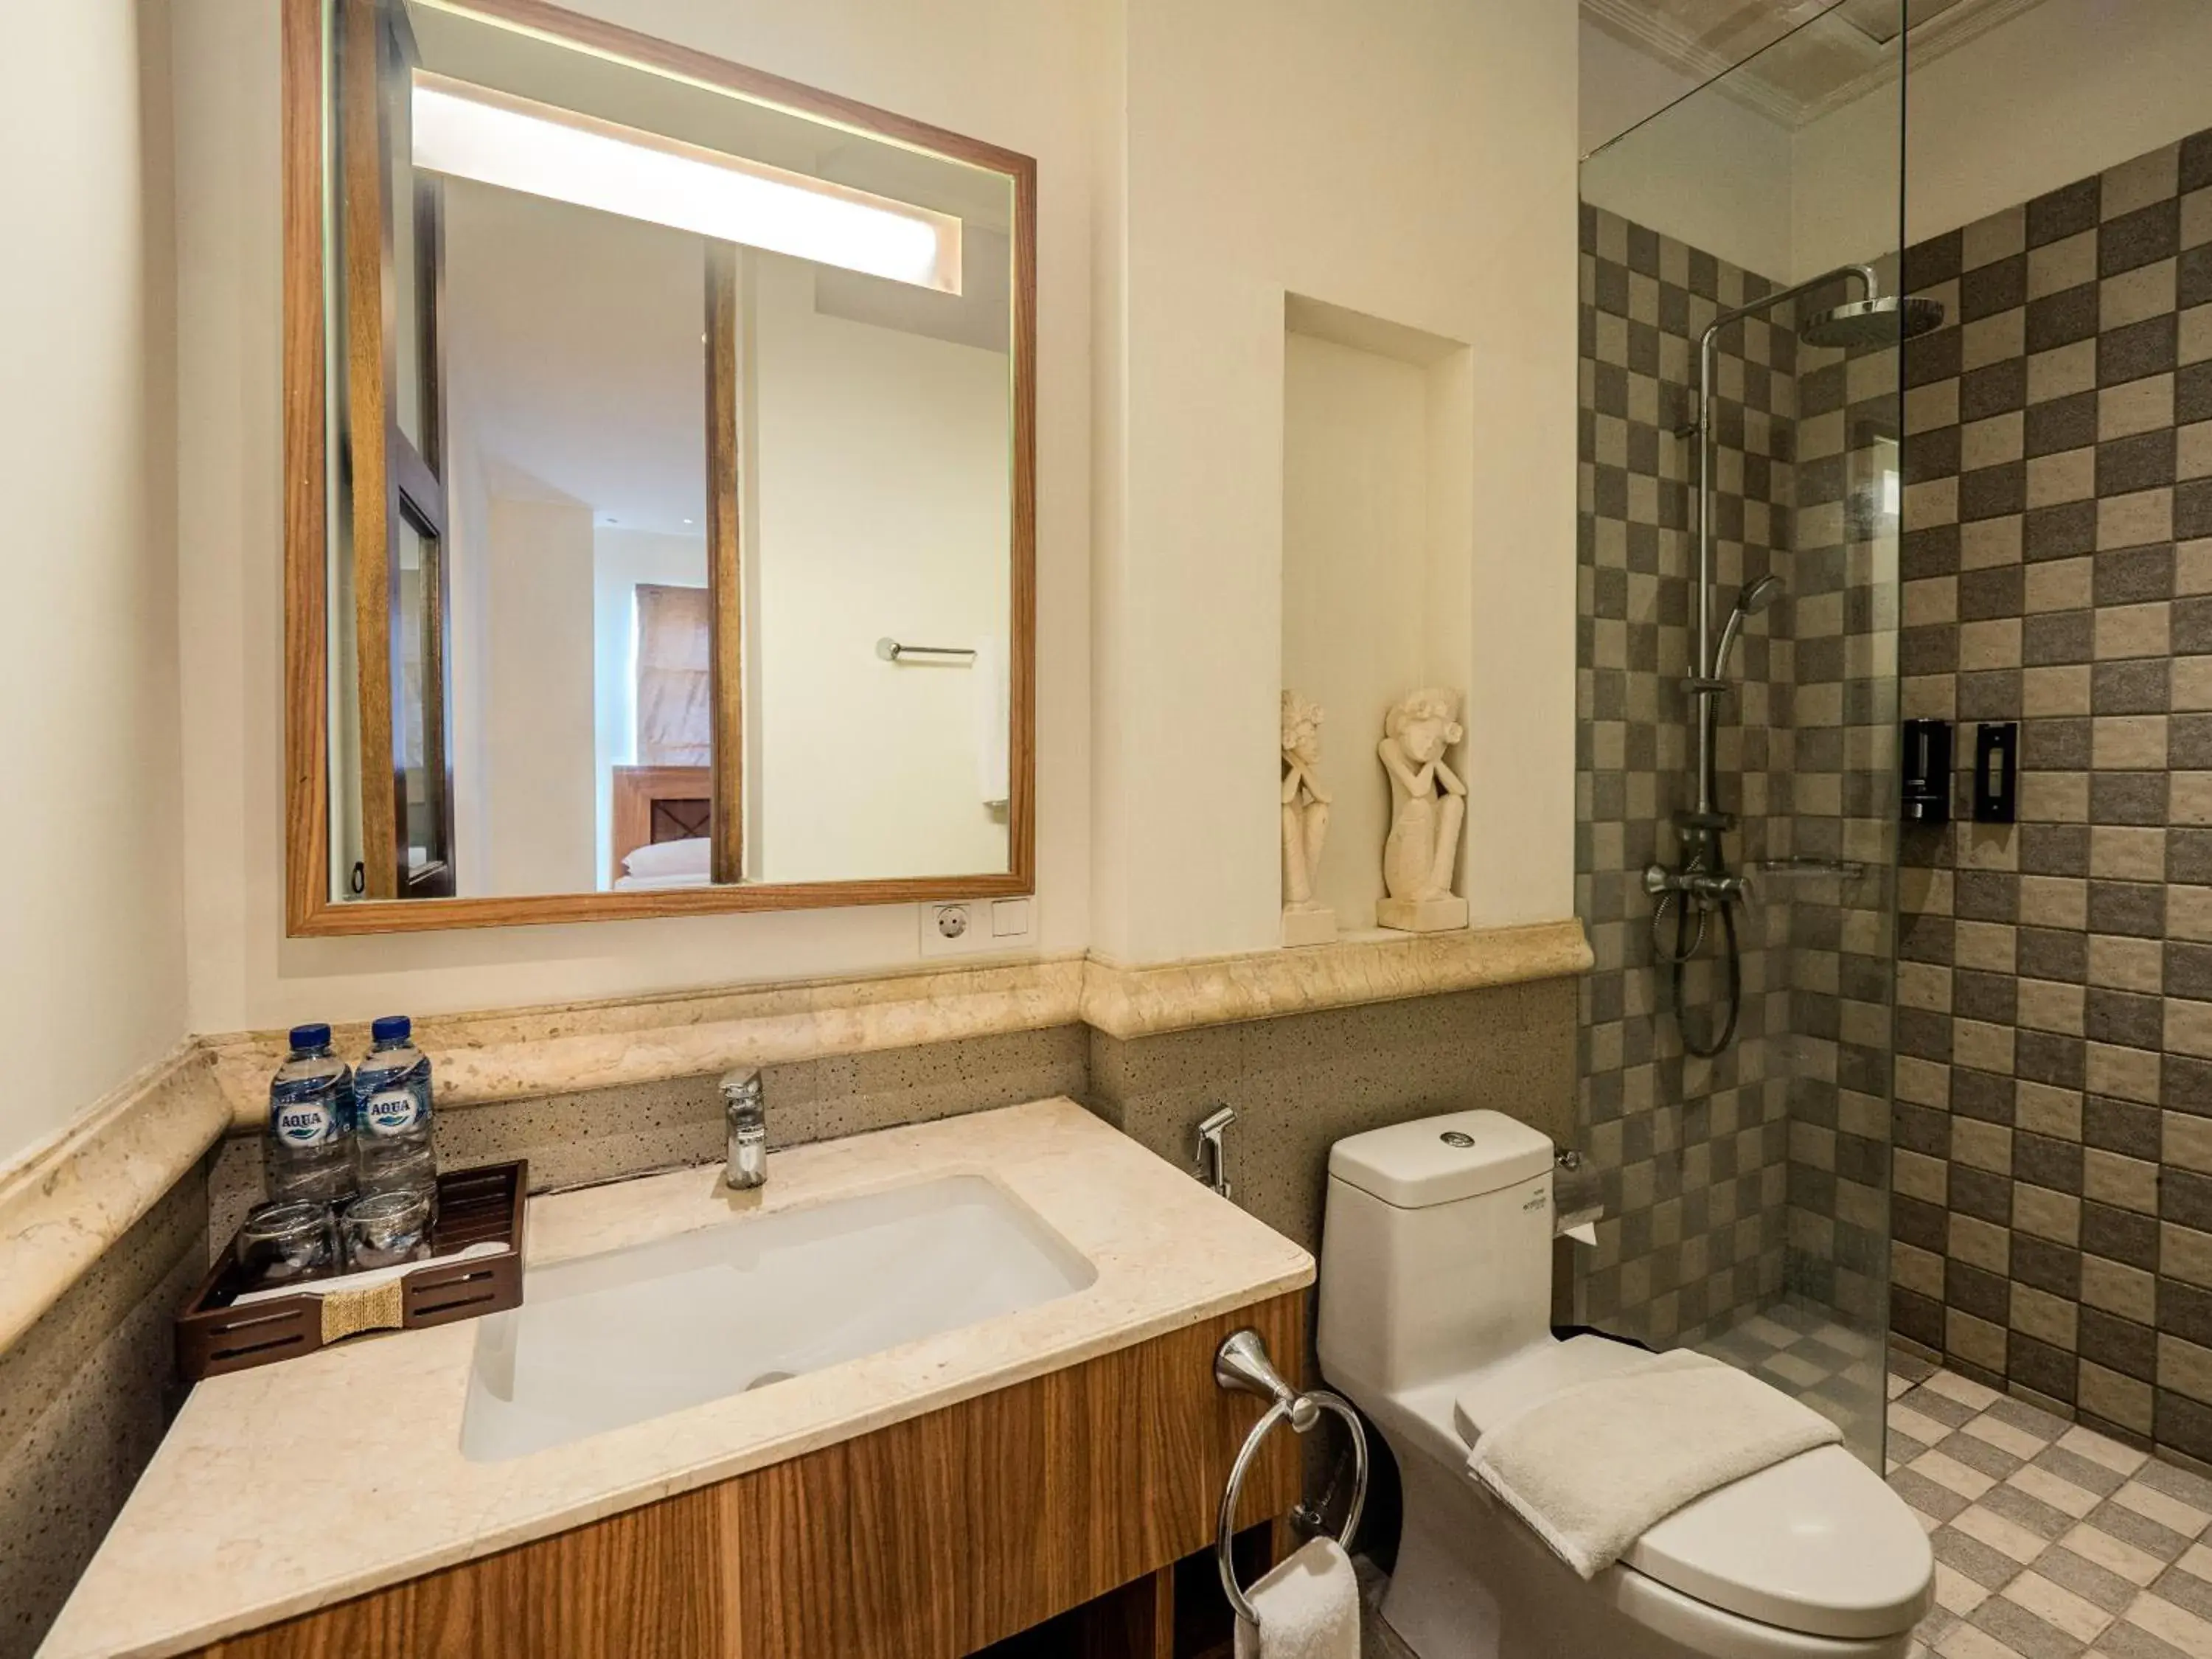 Bathroom in Alron Hotel Kuta Powered by Archipelago